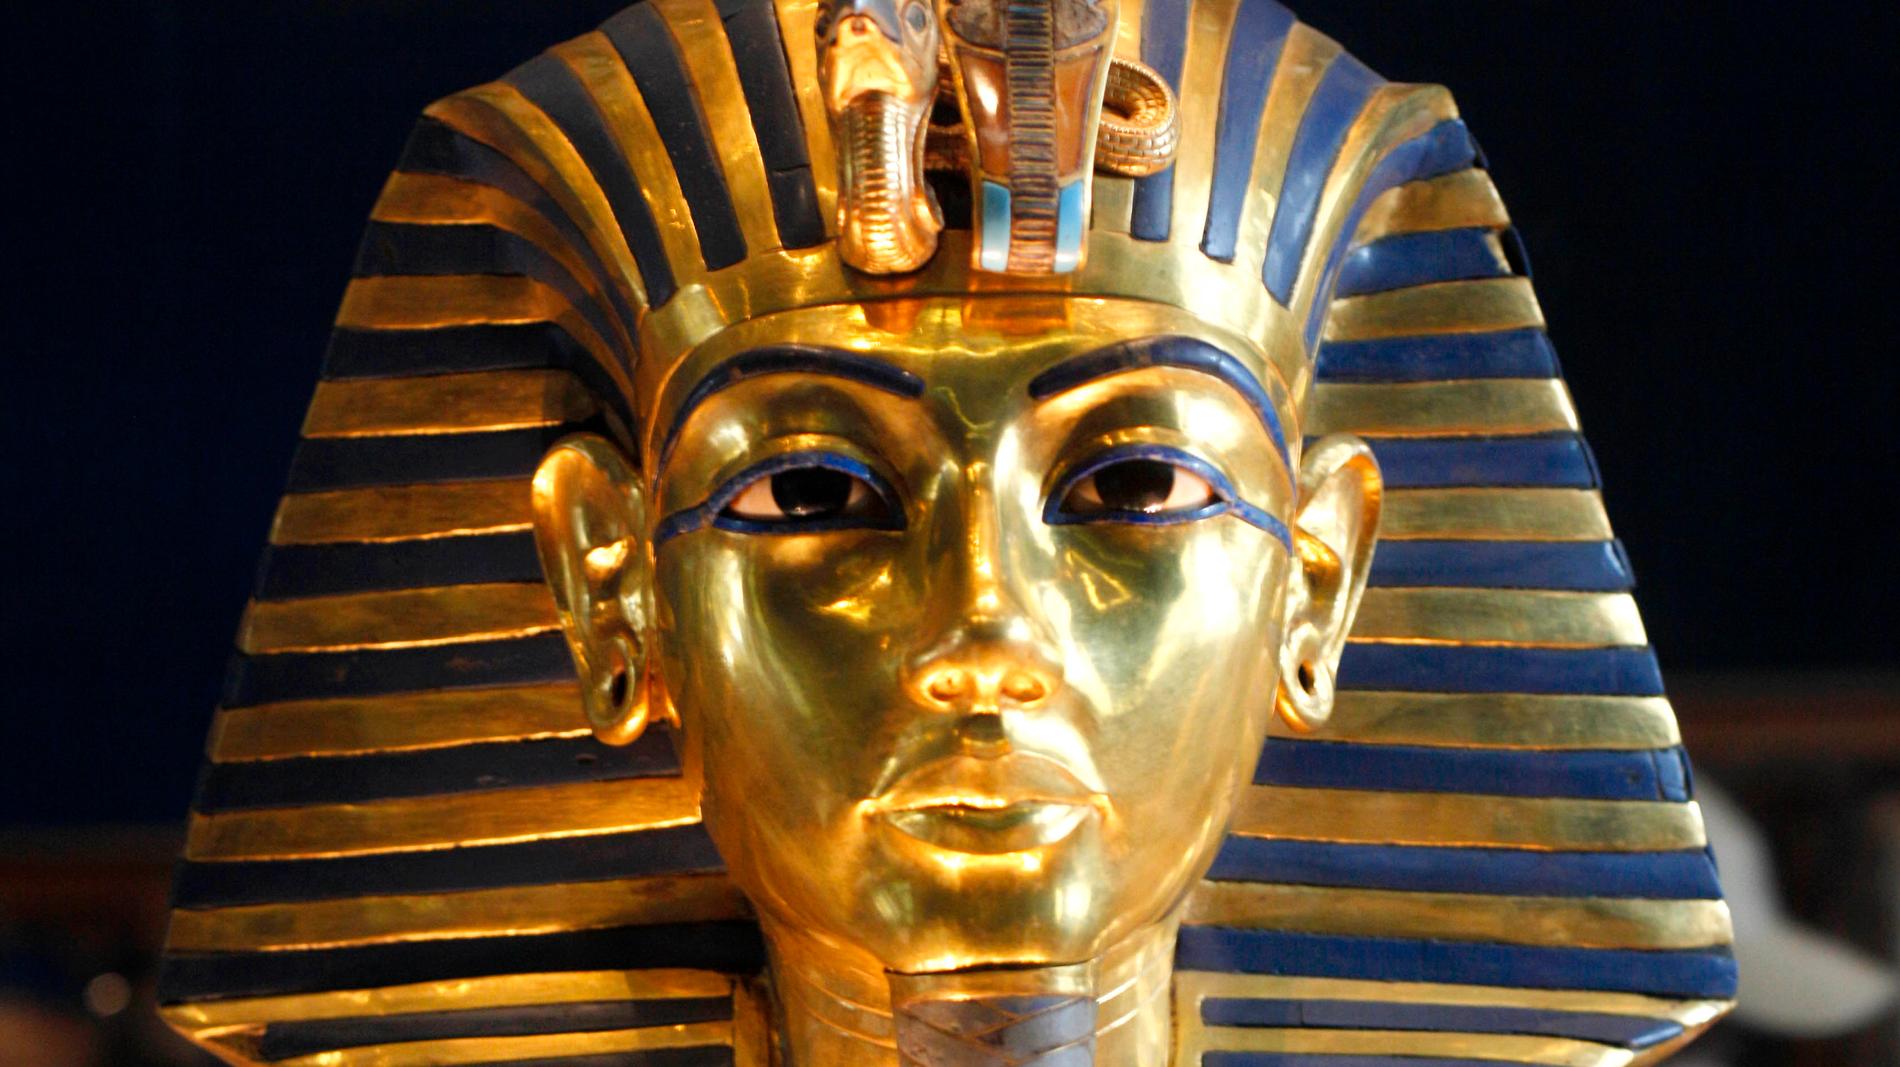 Tutankhamun var bara 19 år gammal när han dog, runt år 1323 före vår tideräkning. I den grav som upptäcktes 1922 fanns fler än 5 000 föremål, bland andra den berömda guldmasken.